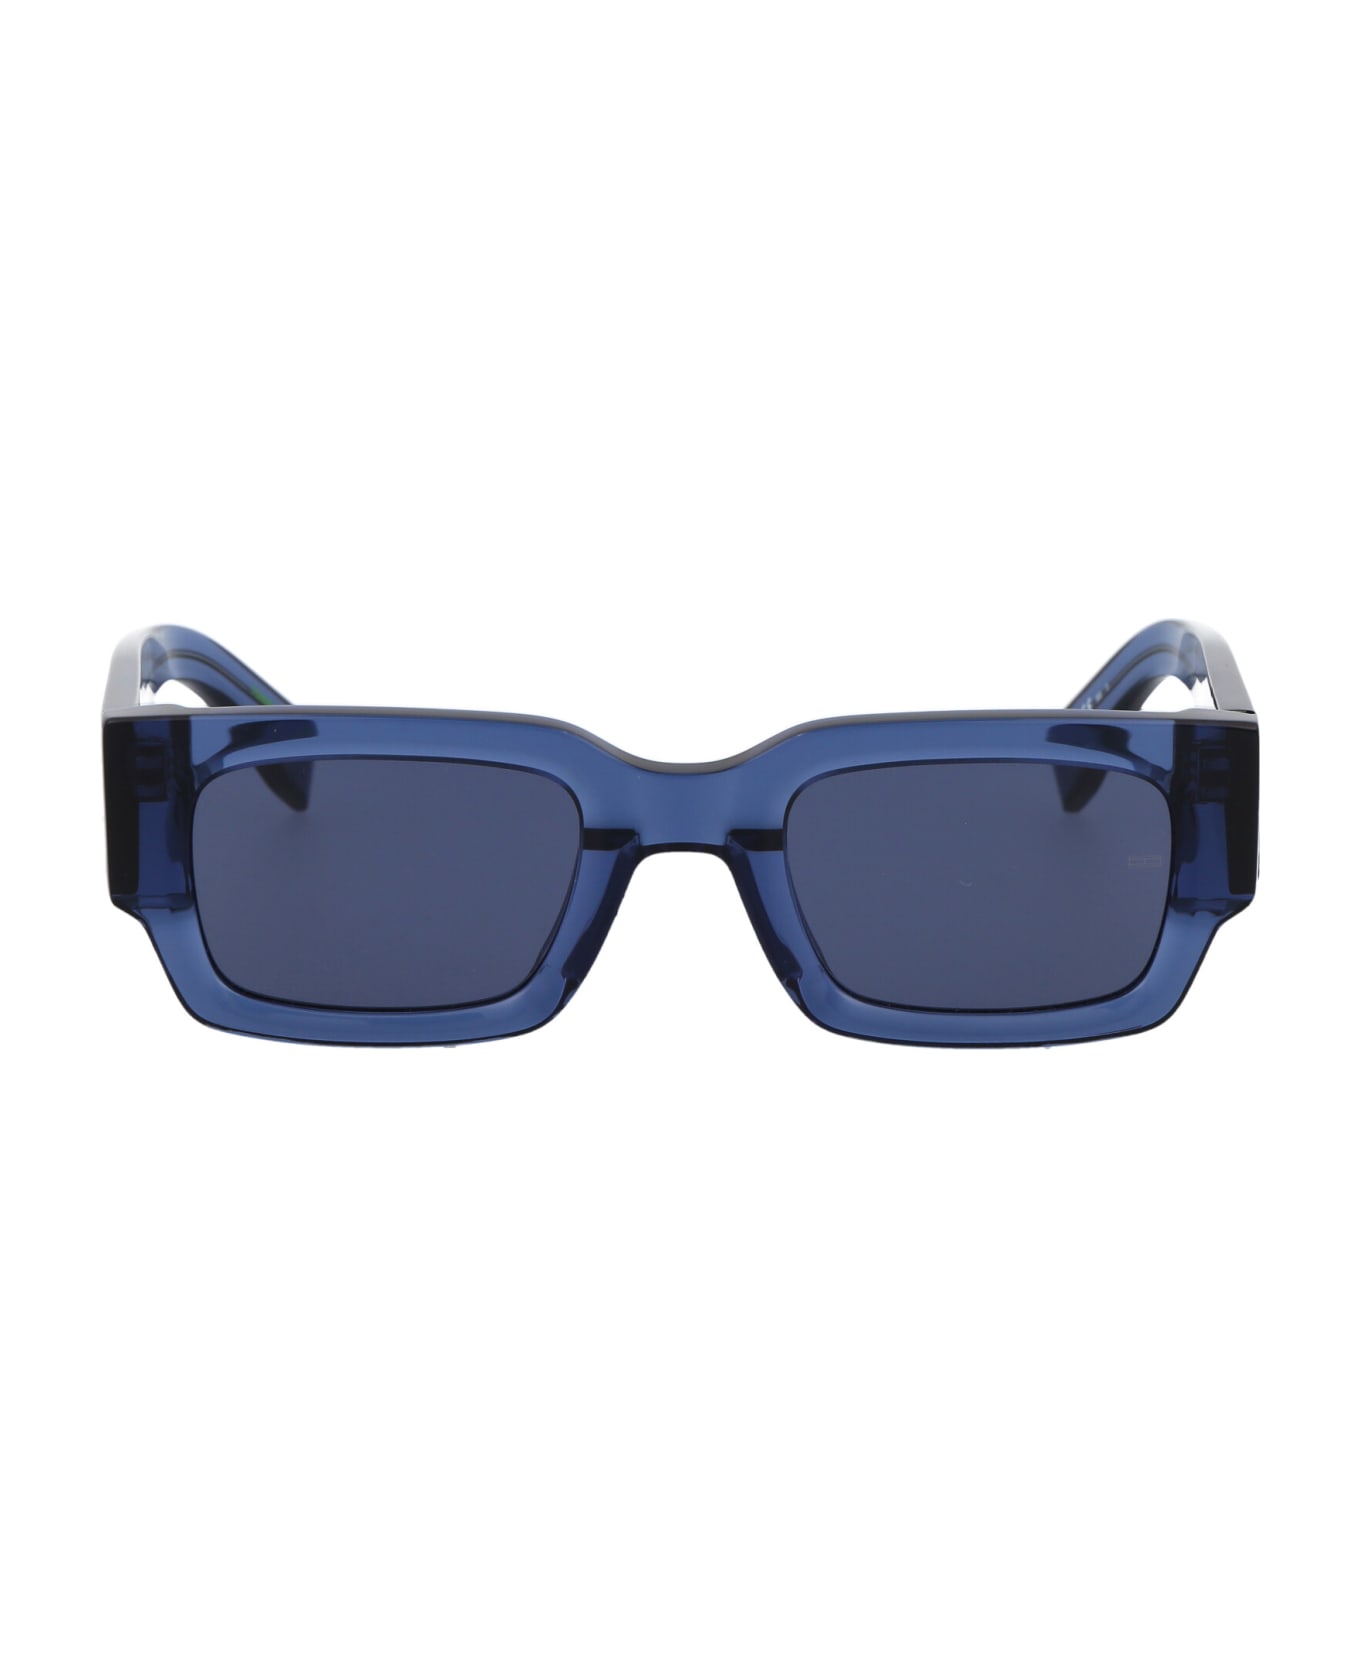 Tommy Hilfiger Tj 0086/s Sunglasses - PJPKU BLUE